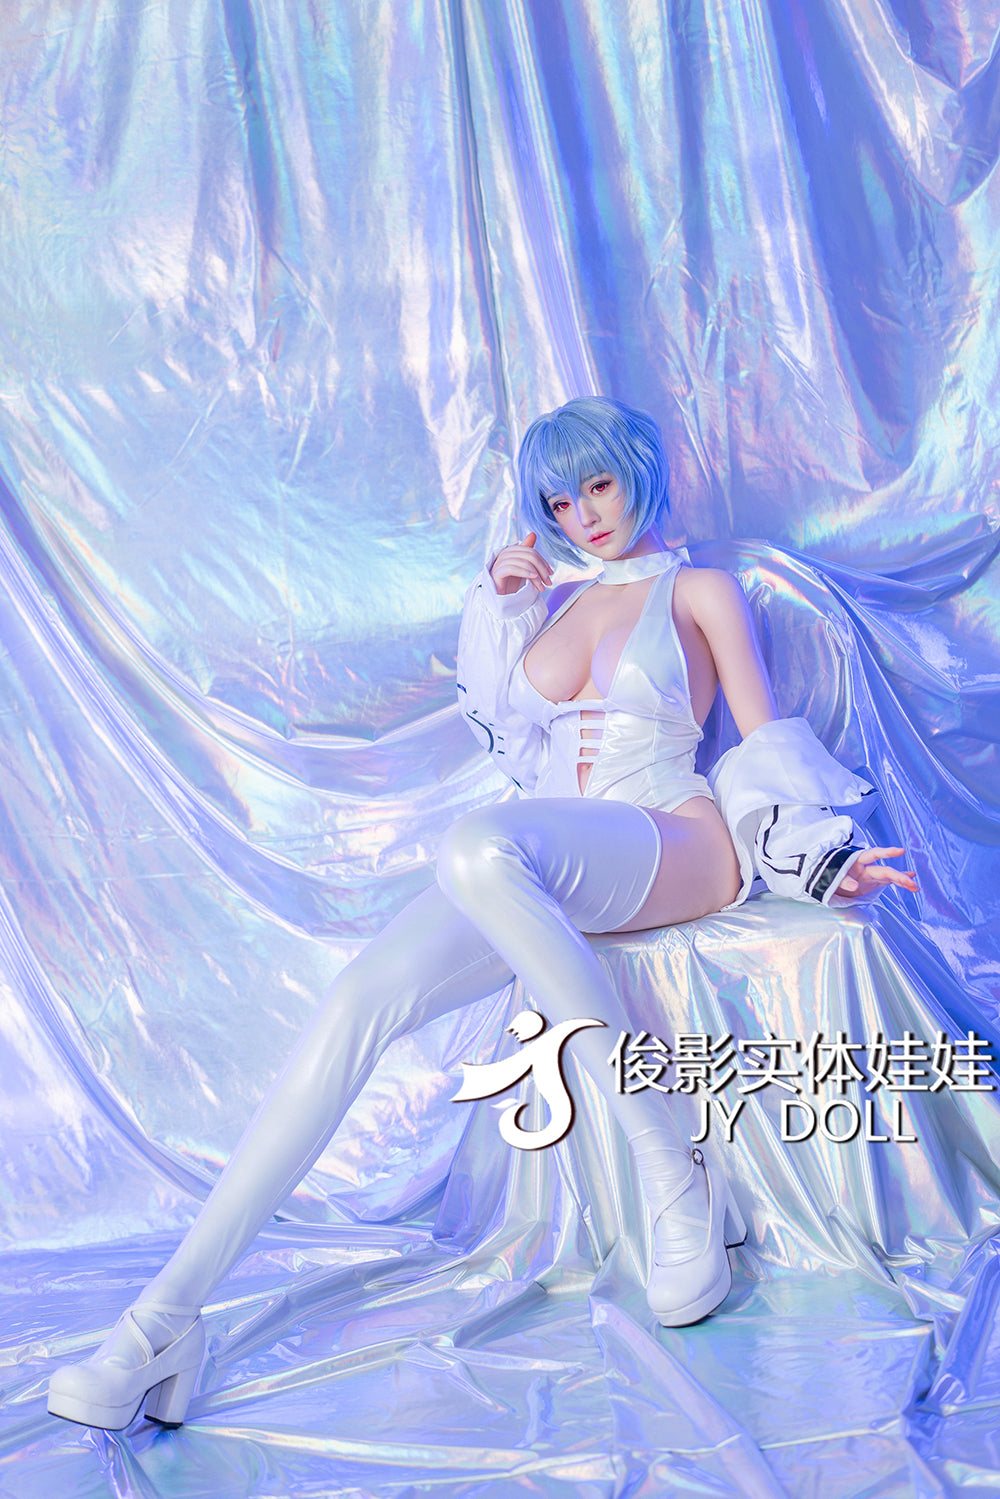 JY Doll 163 cm Silicone - Ayanami | Sex Dolls SG